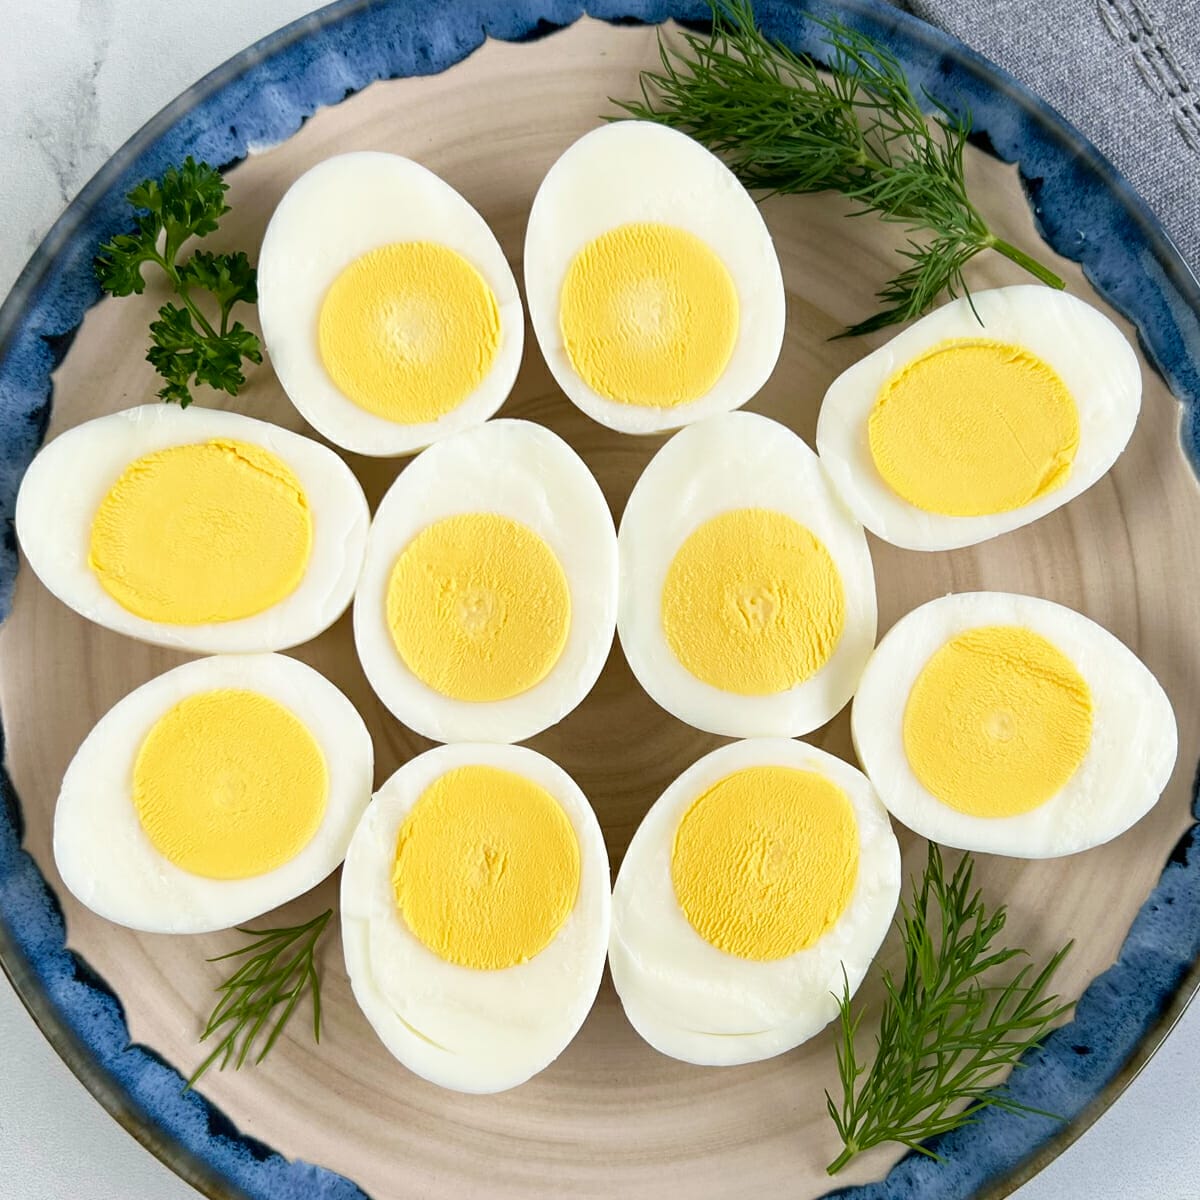 https://evuecezehrh.exactdn.com/wp-content/uploads/2022/04/air-fryer-hard-boiled-eggs-feature.jpg?strip=all&lossy=1&ssl=1